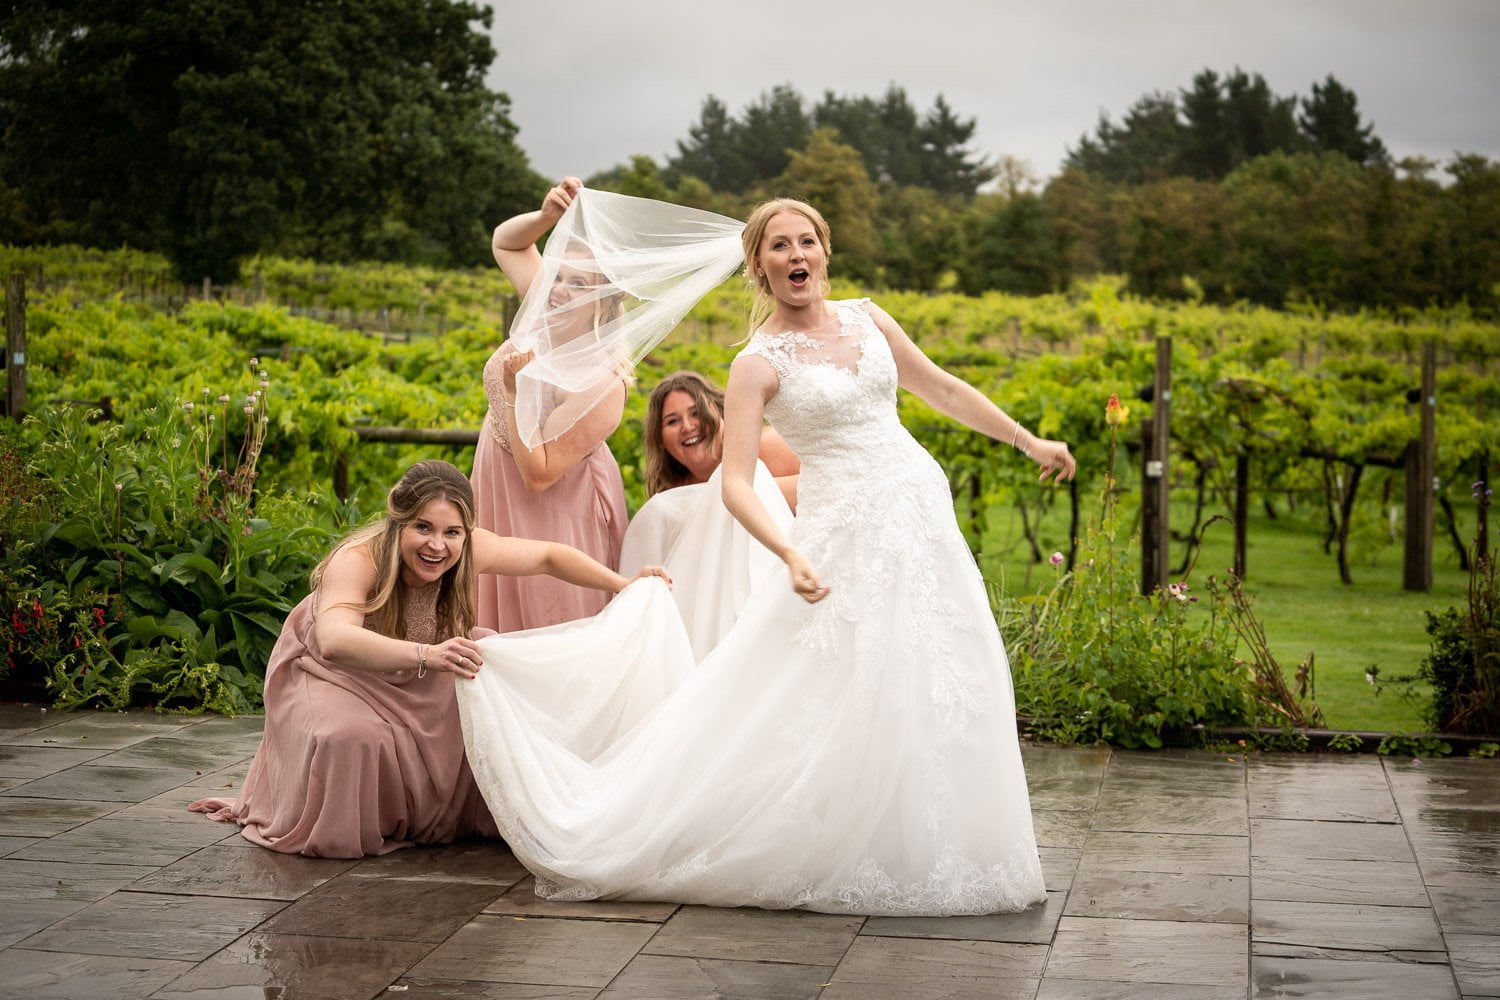 Three Choirs vineyard wedding